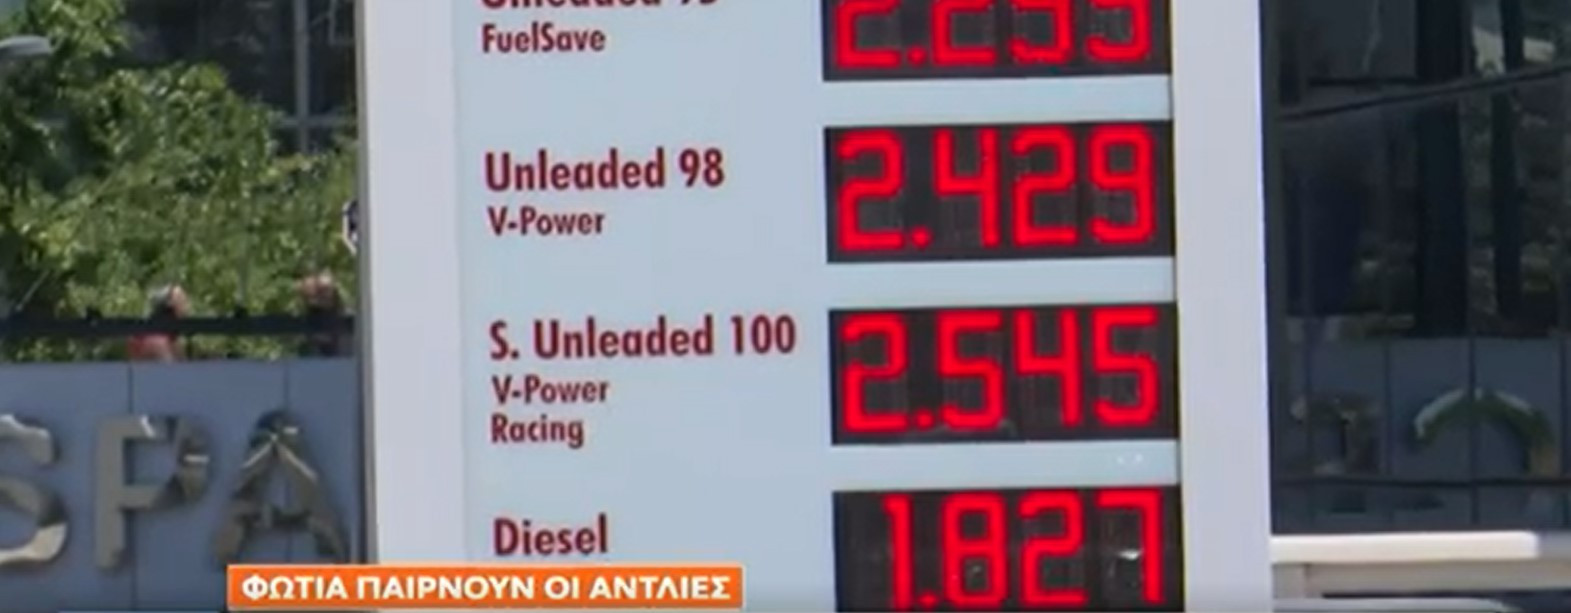 Συνεχής αύξηση στις τιμές των καυσίμων – Τι λέει ο πρόεδρος βενζινοπωλών [Βίντεο]